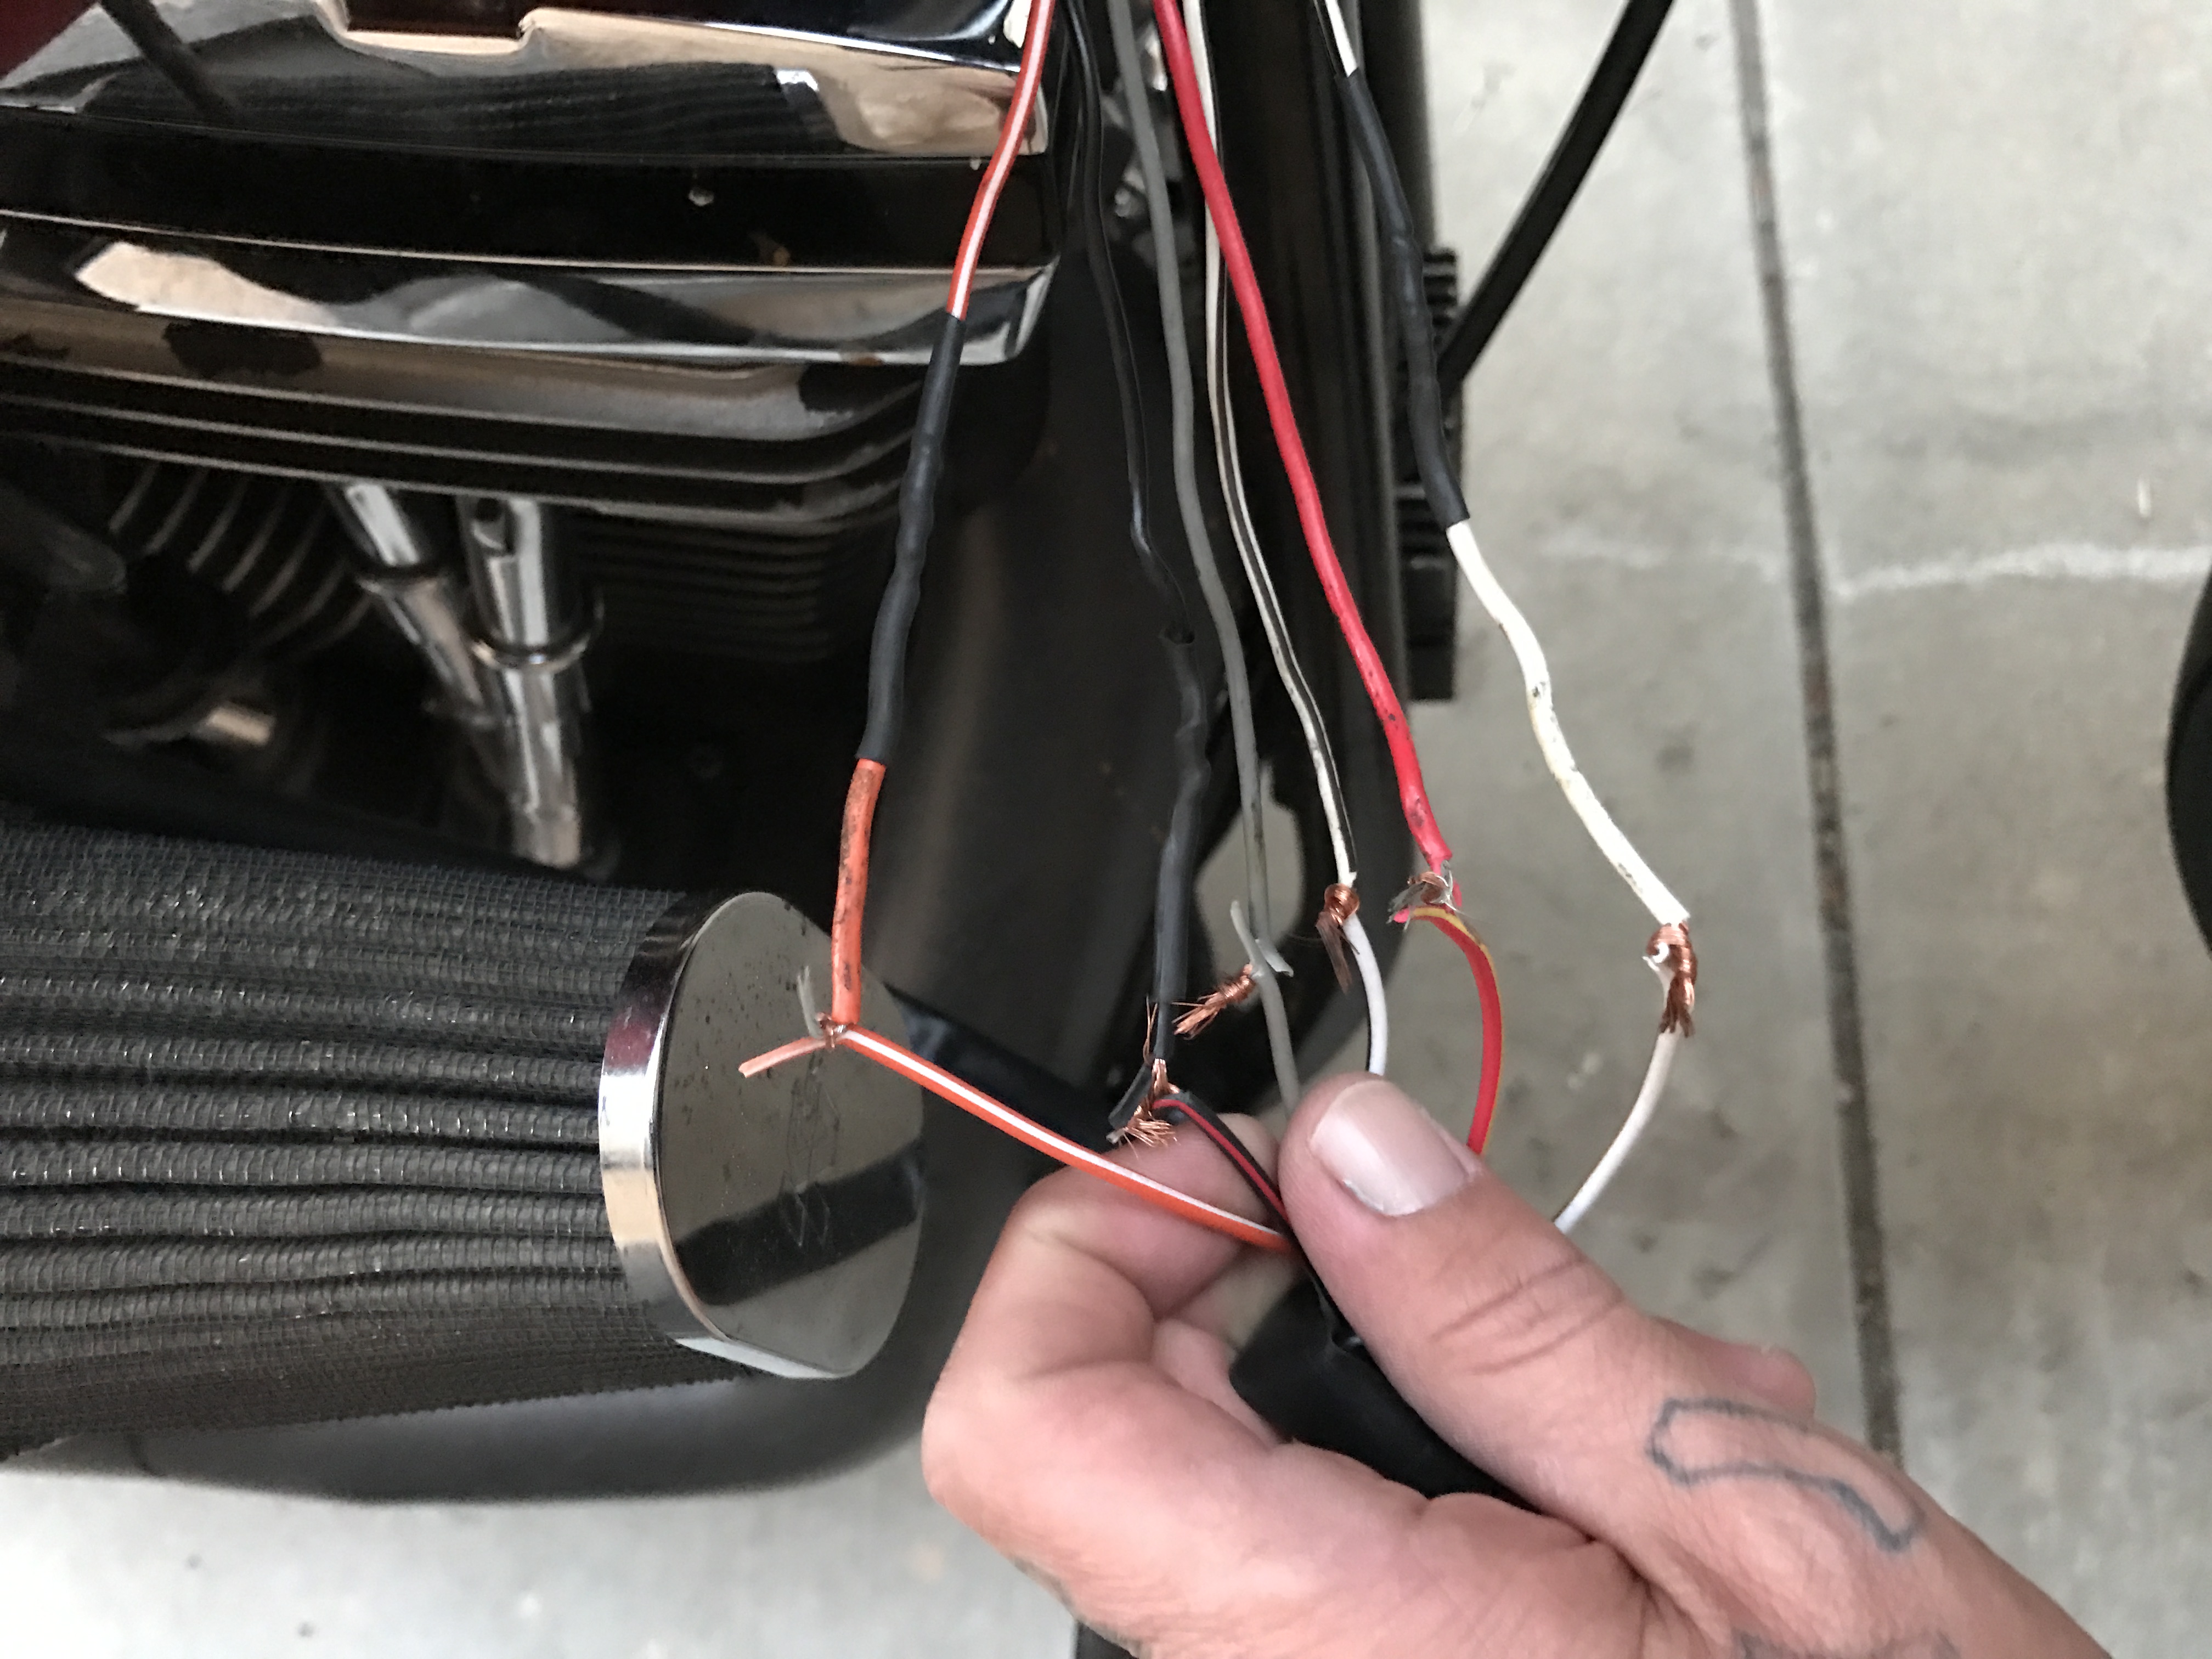 FXSTSB - Some wiring help - Harley Davidson Forums